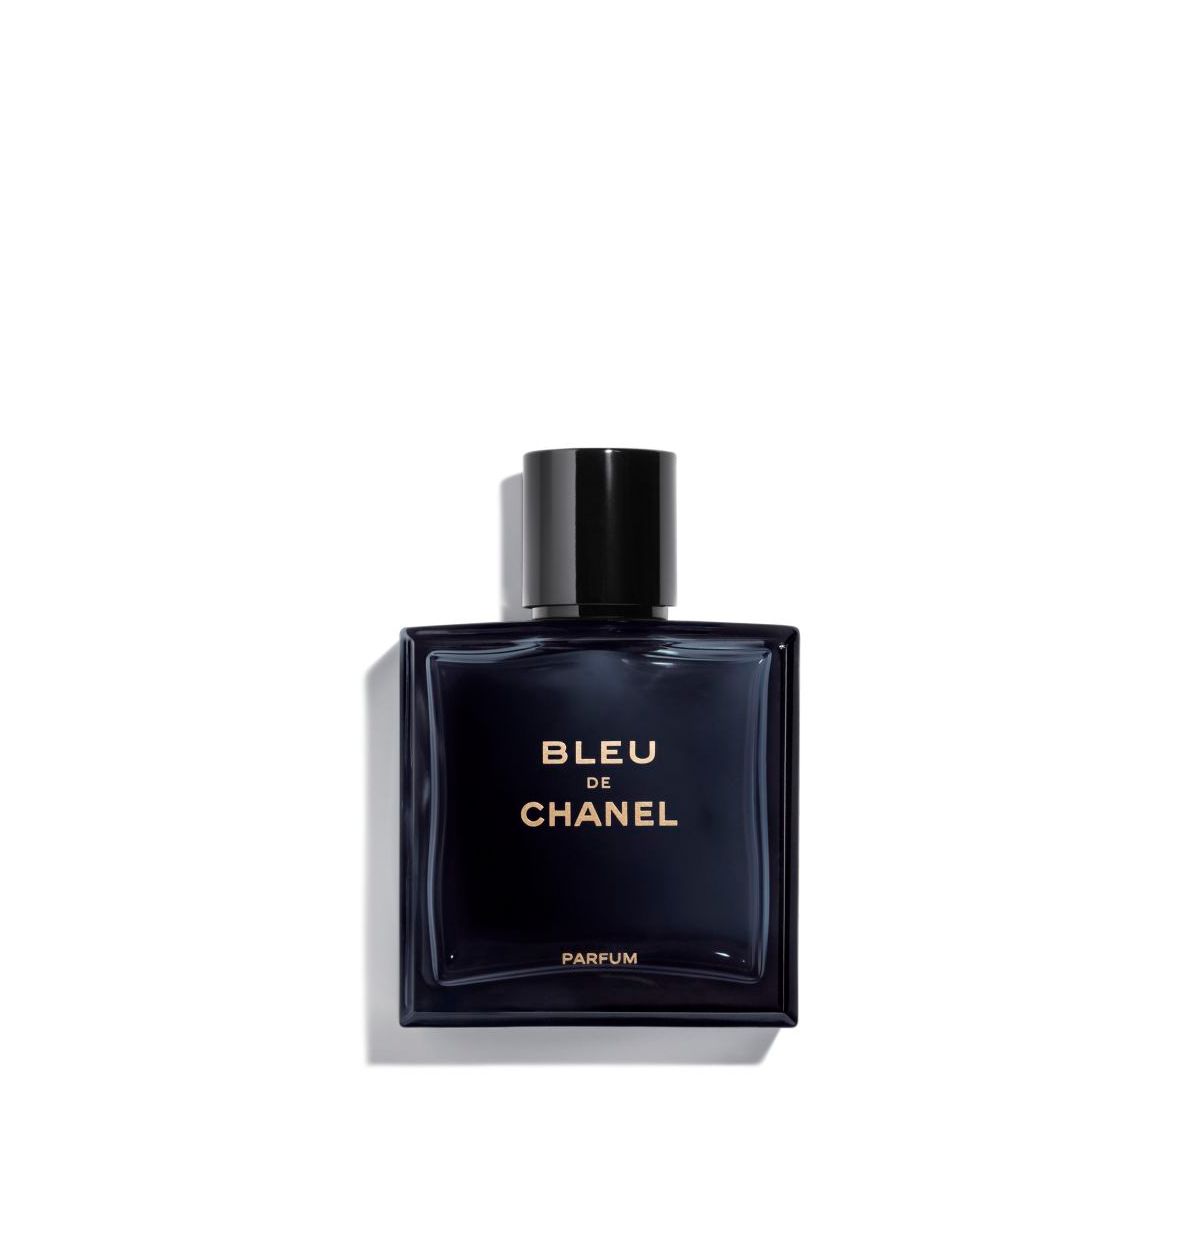 3 Parfums Sauvage Dior, Bleu de Chanel, Dior Homme Intense (Eau de Parfum)